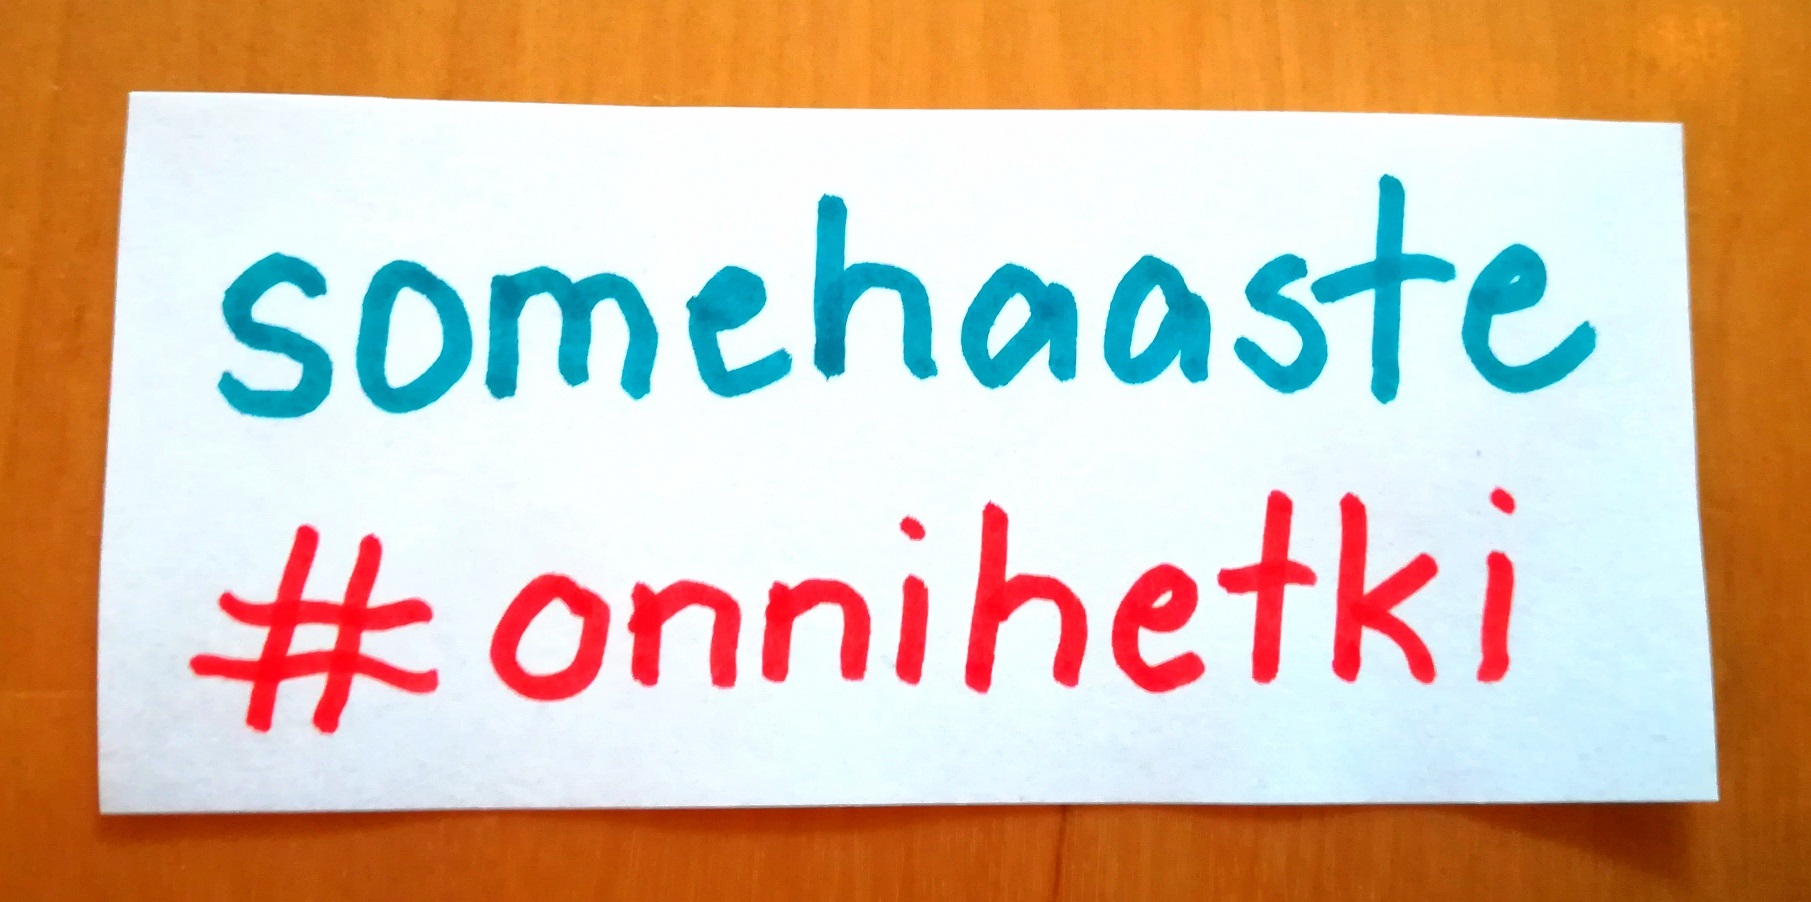 Somehaaste #onnihetki.